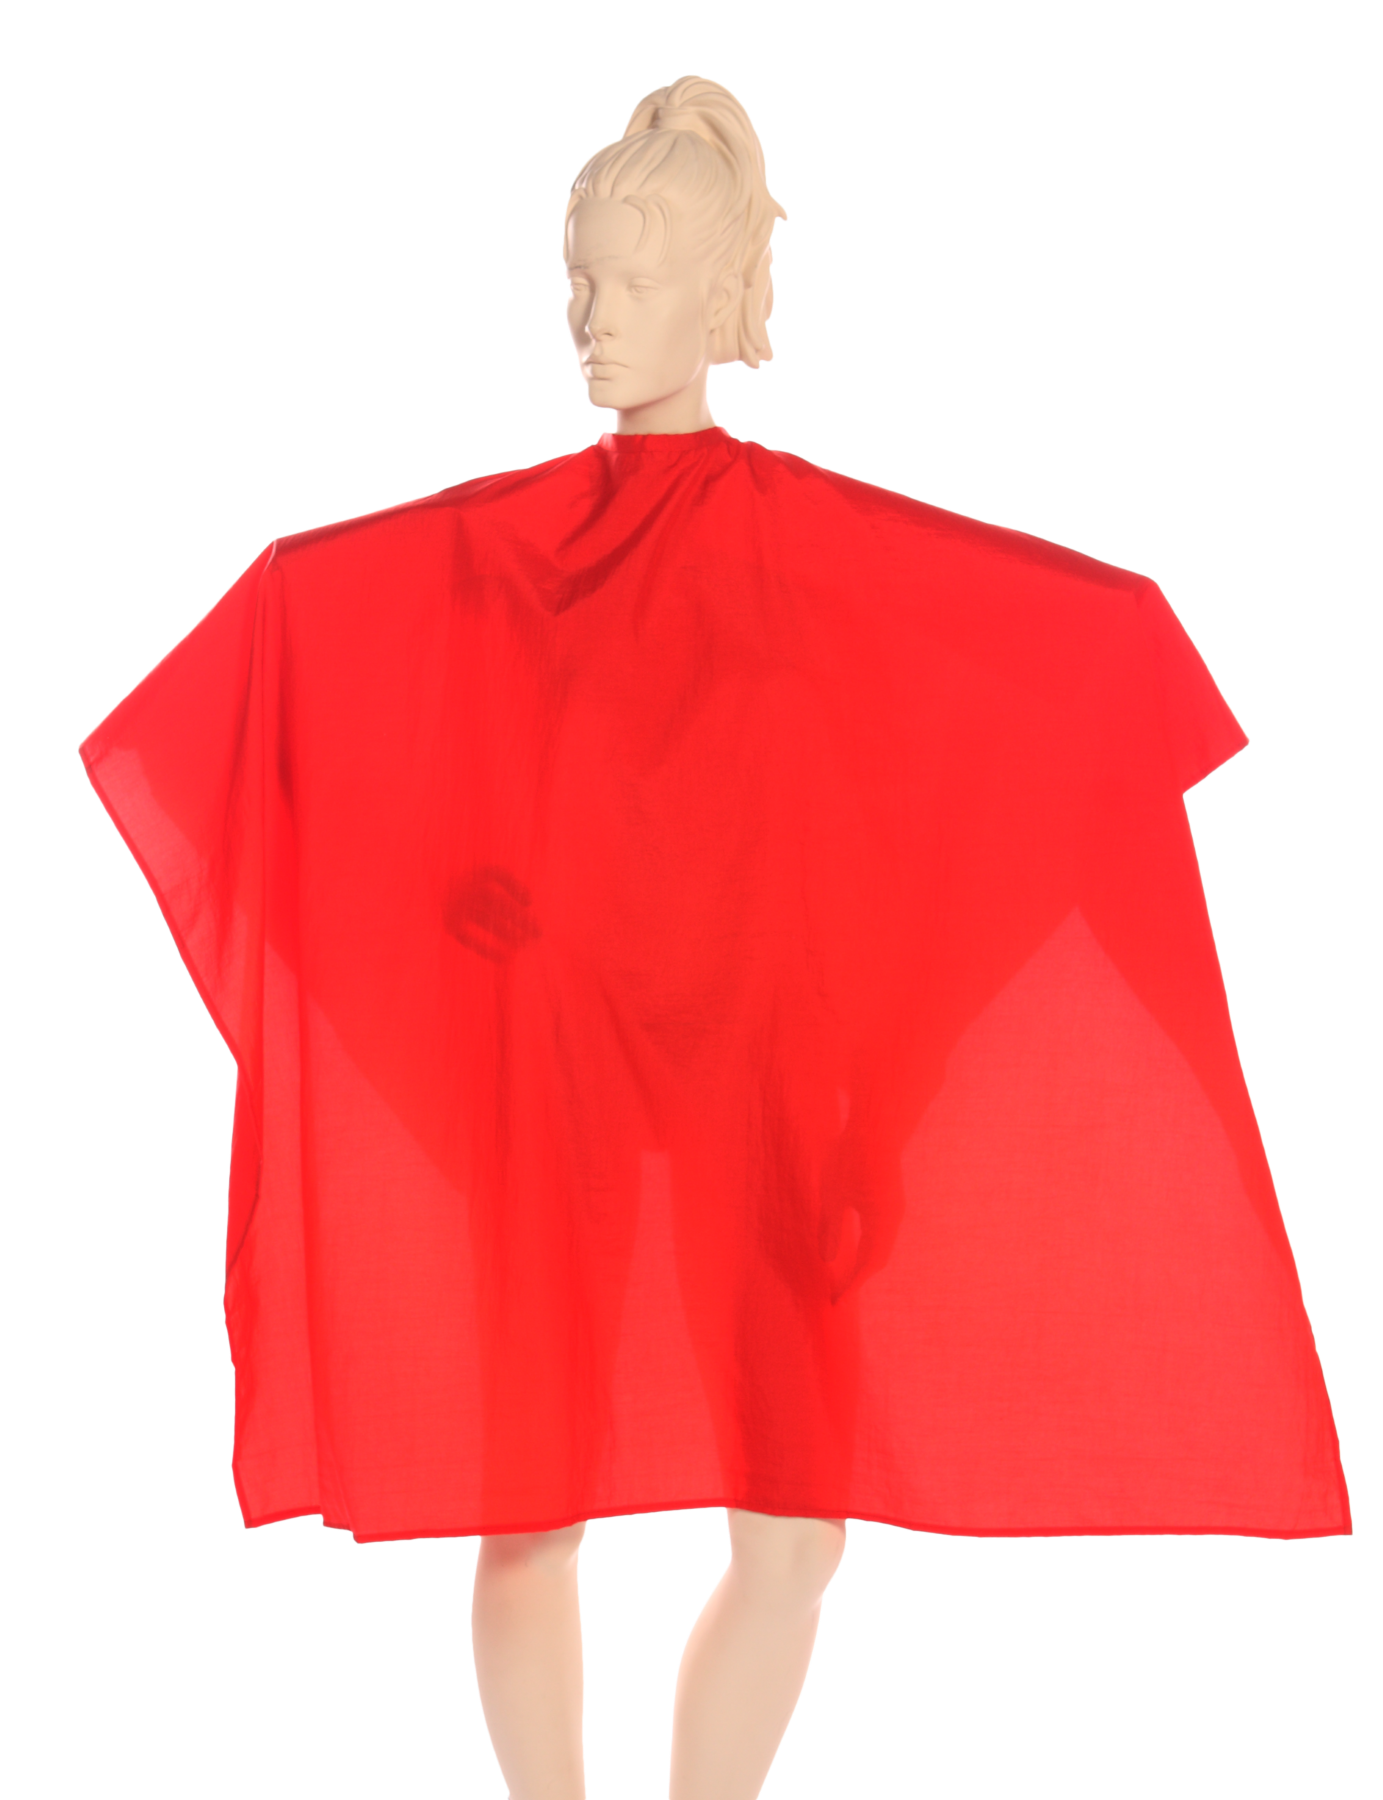 Multi-Purpose Salon Cape in 100%  Lightweight Antron Nylon Fabric in Red